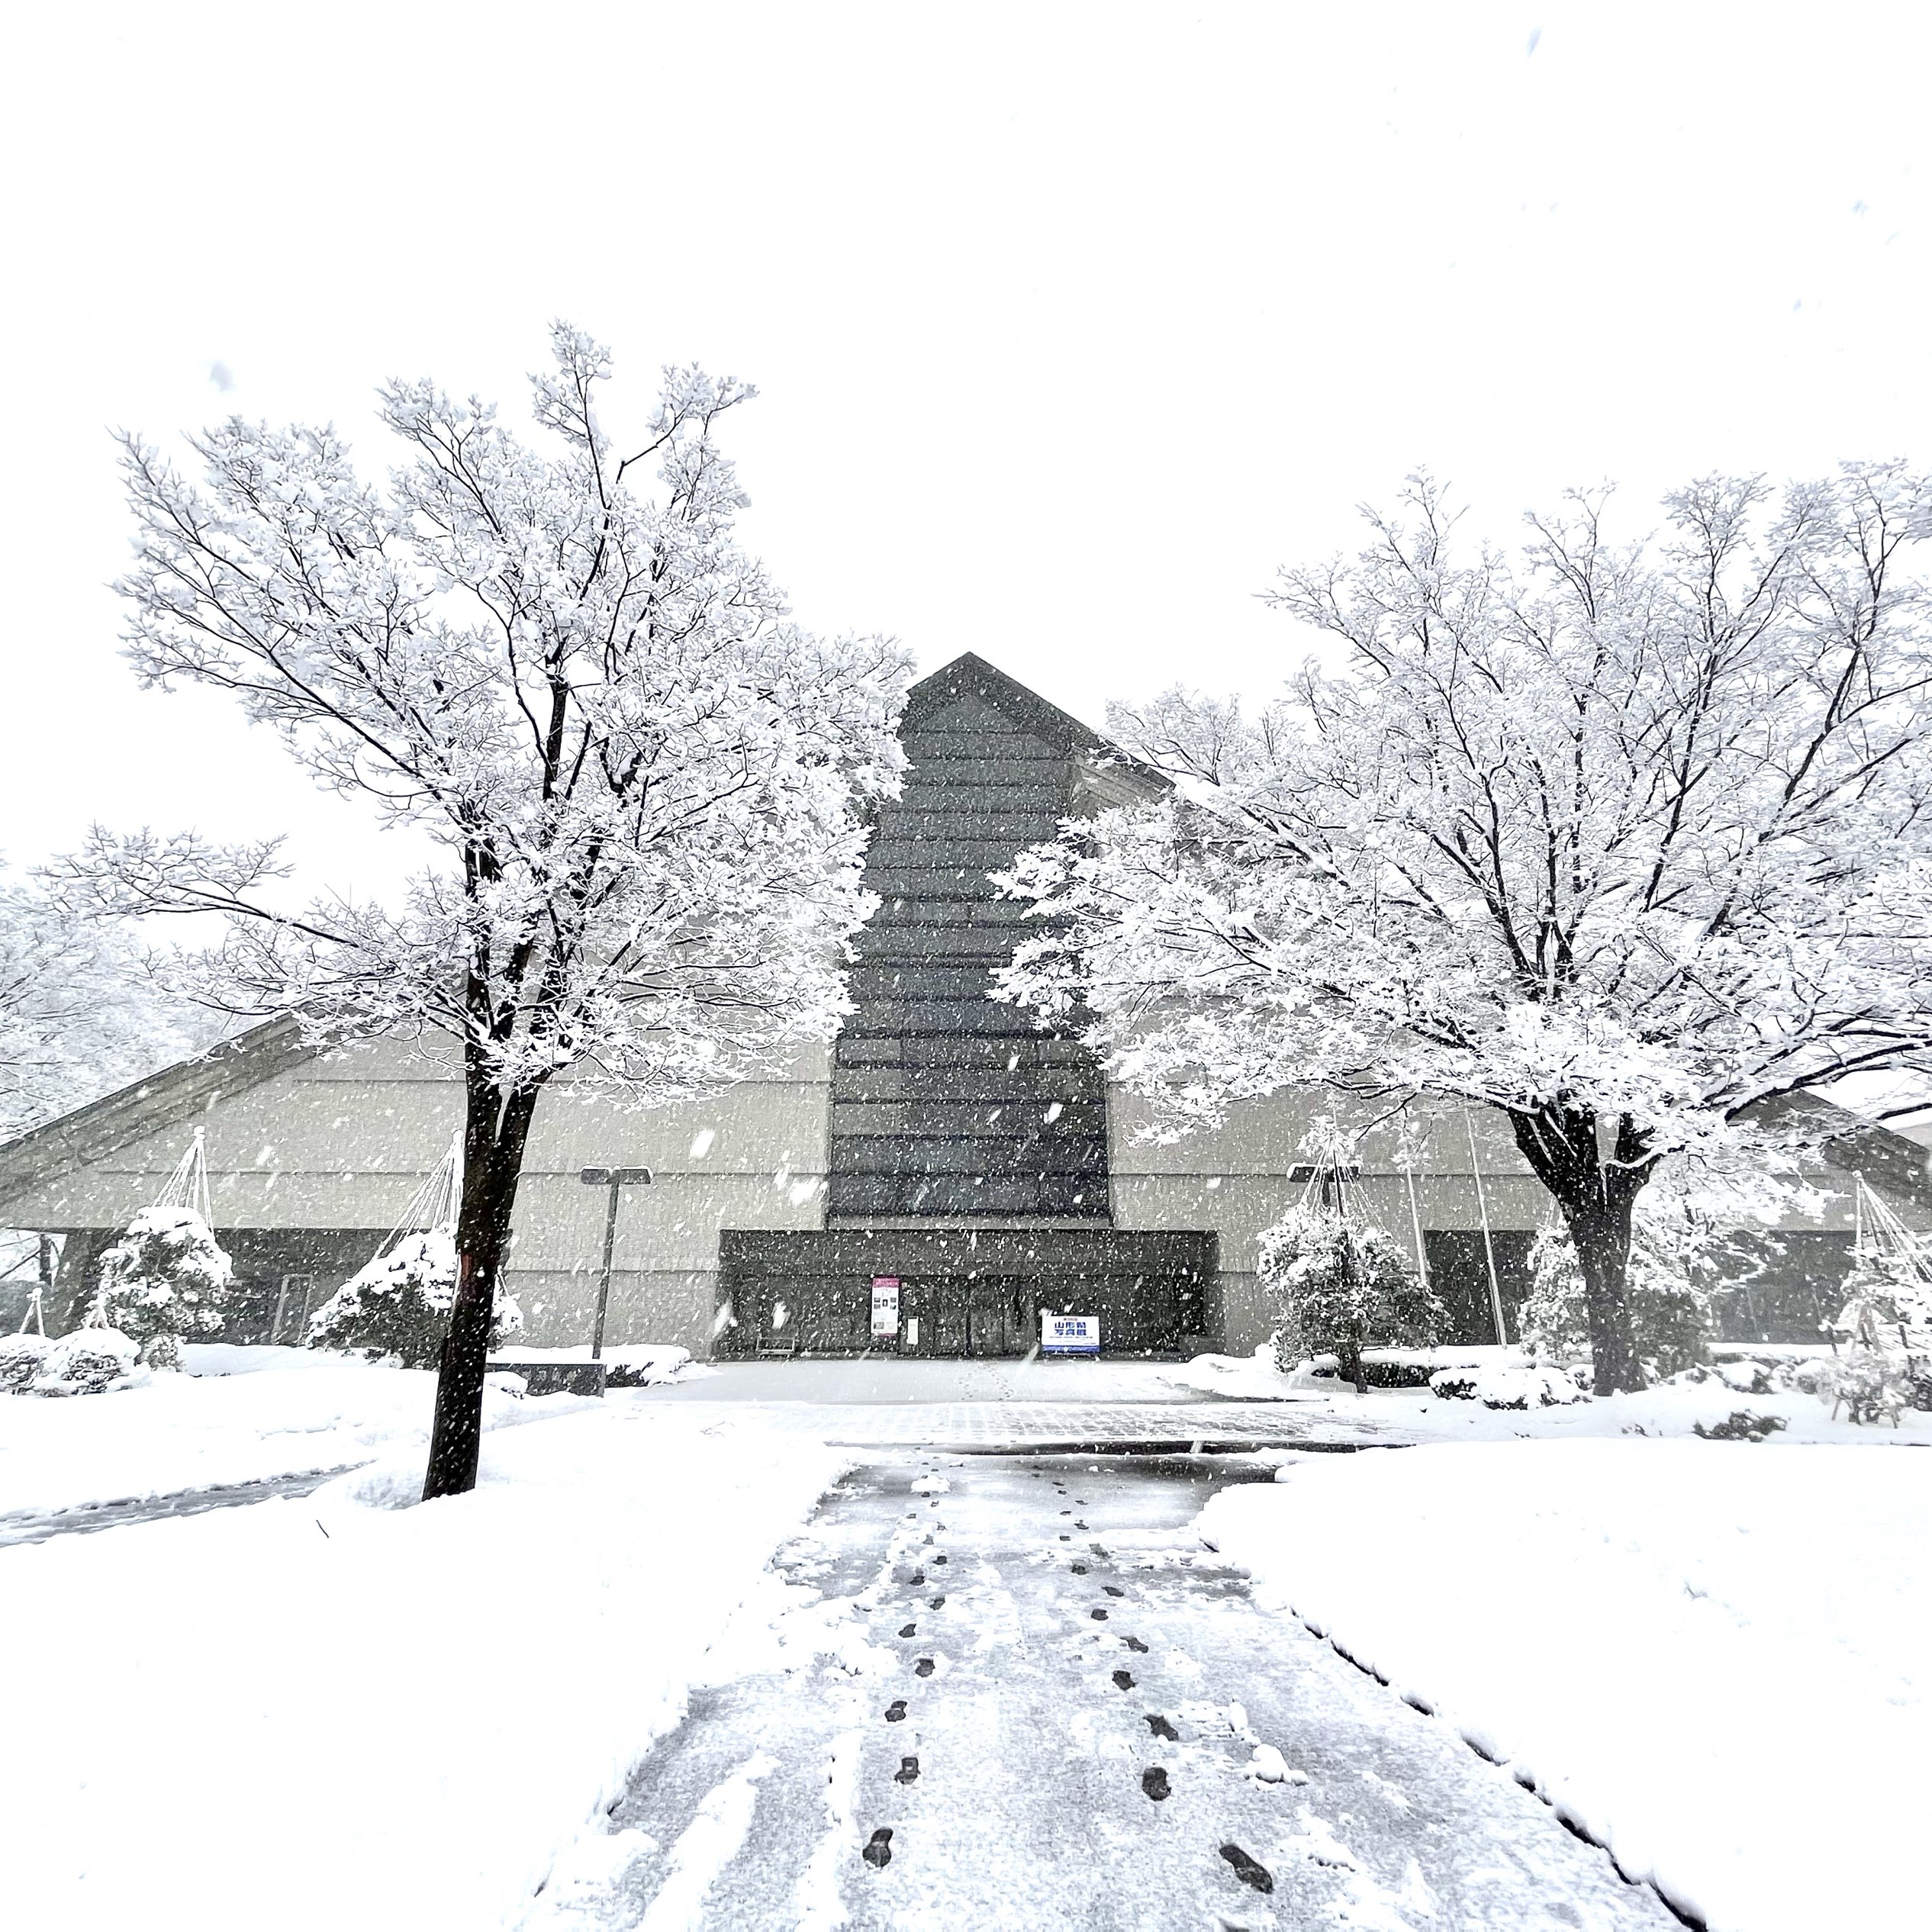 [山形] 下雪的山形美术馆🖼毕加索等著名画家的作品也将展出